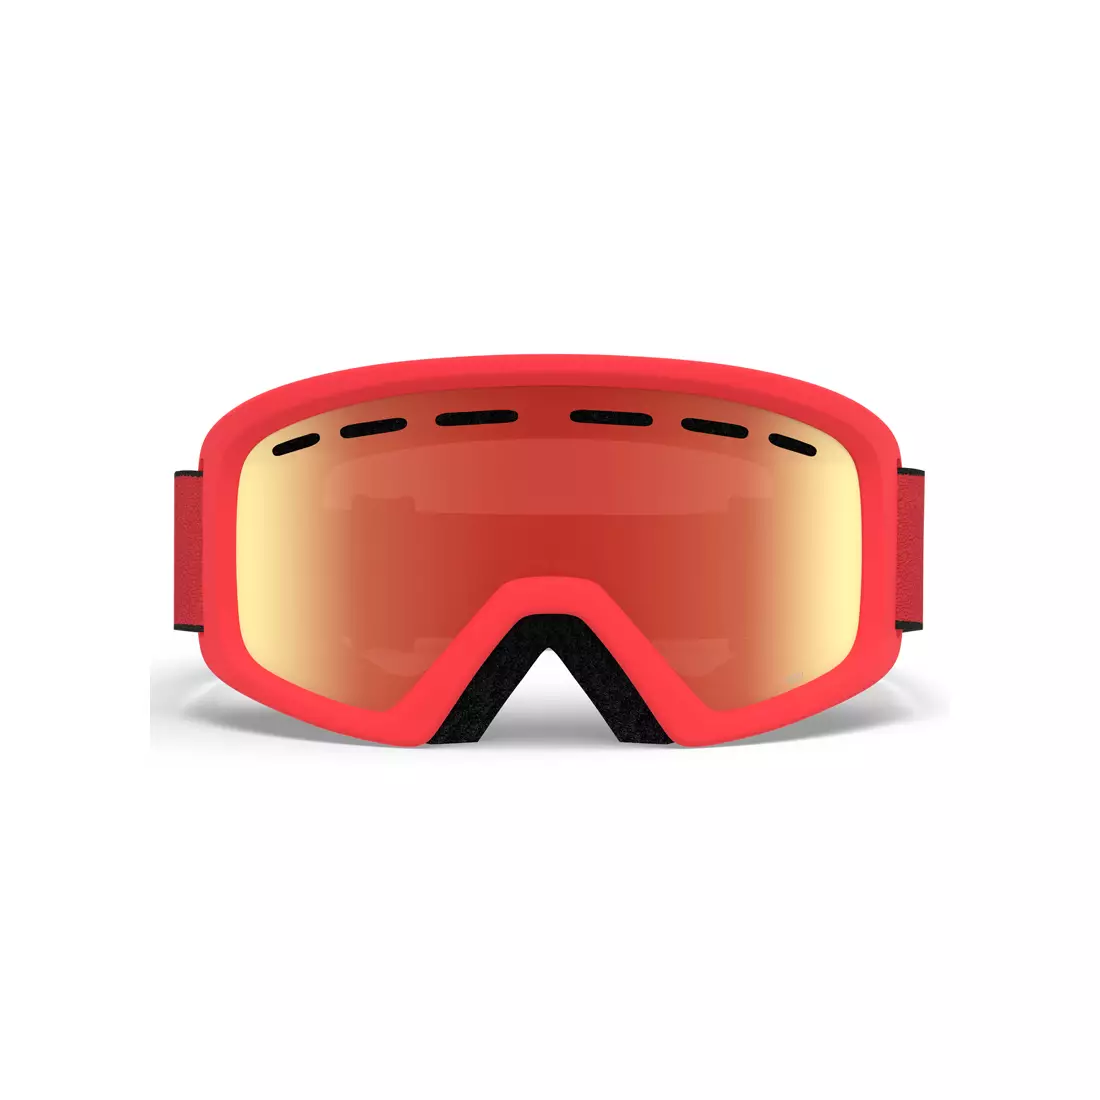 Juniorské lyžařské / snowboardové brýle REV RED BLACK ZOOM GR-7094700